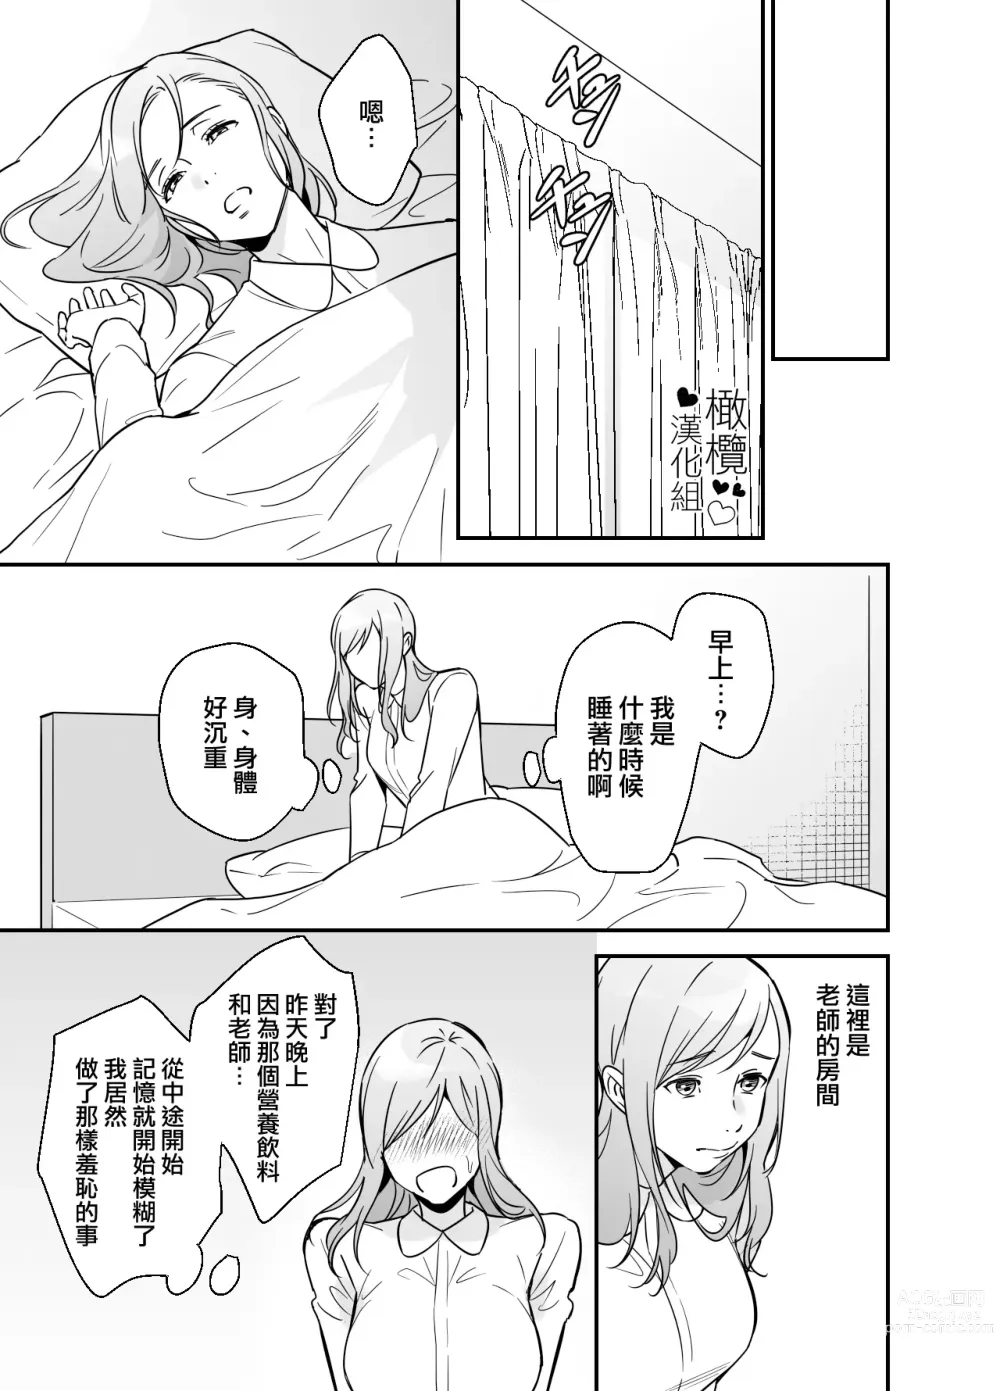 Page 56 of doujinshi 处男小说家和家政妇小姐